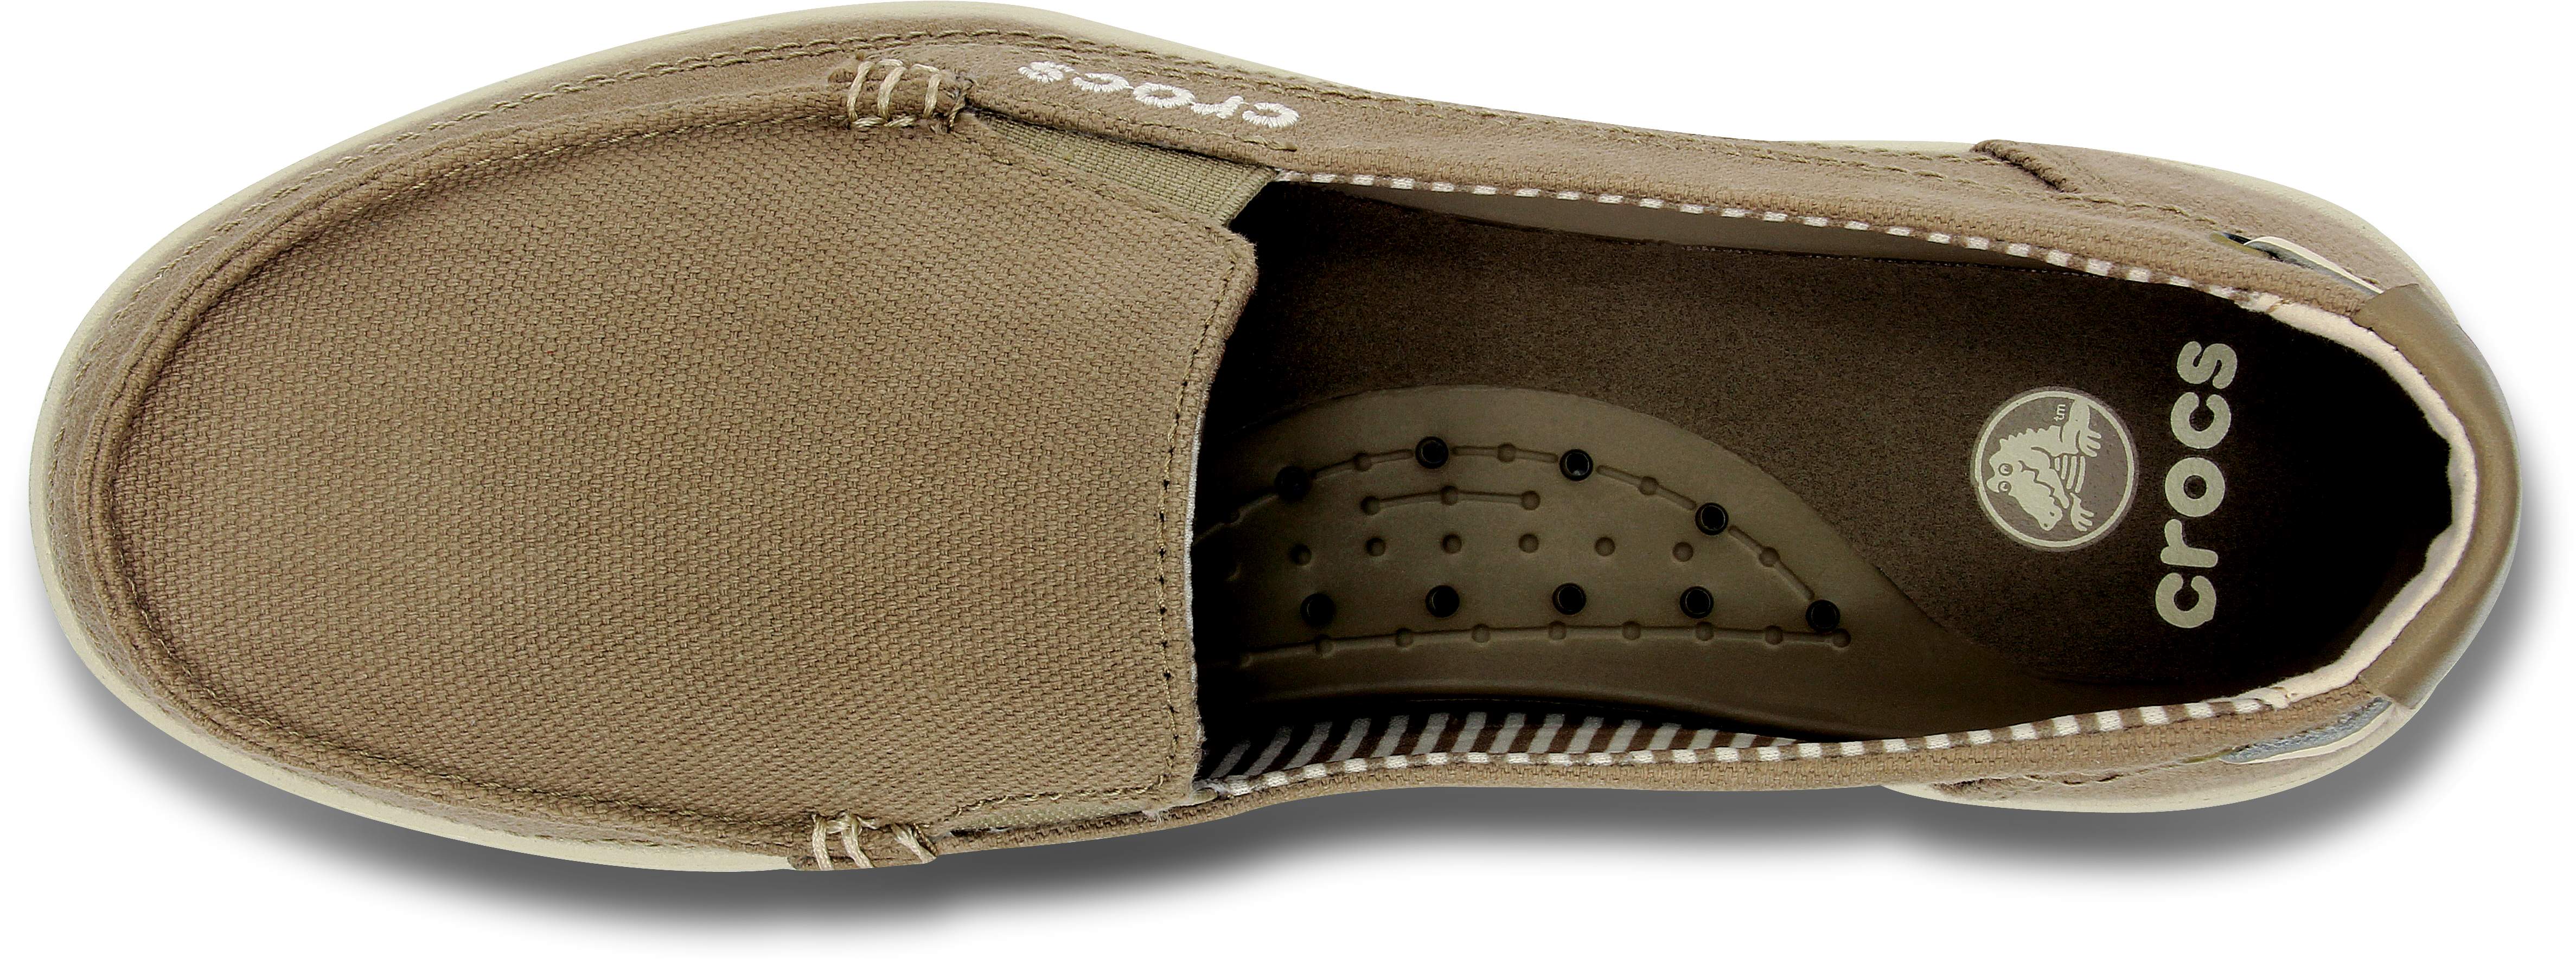 crocs walu ii women's loafers